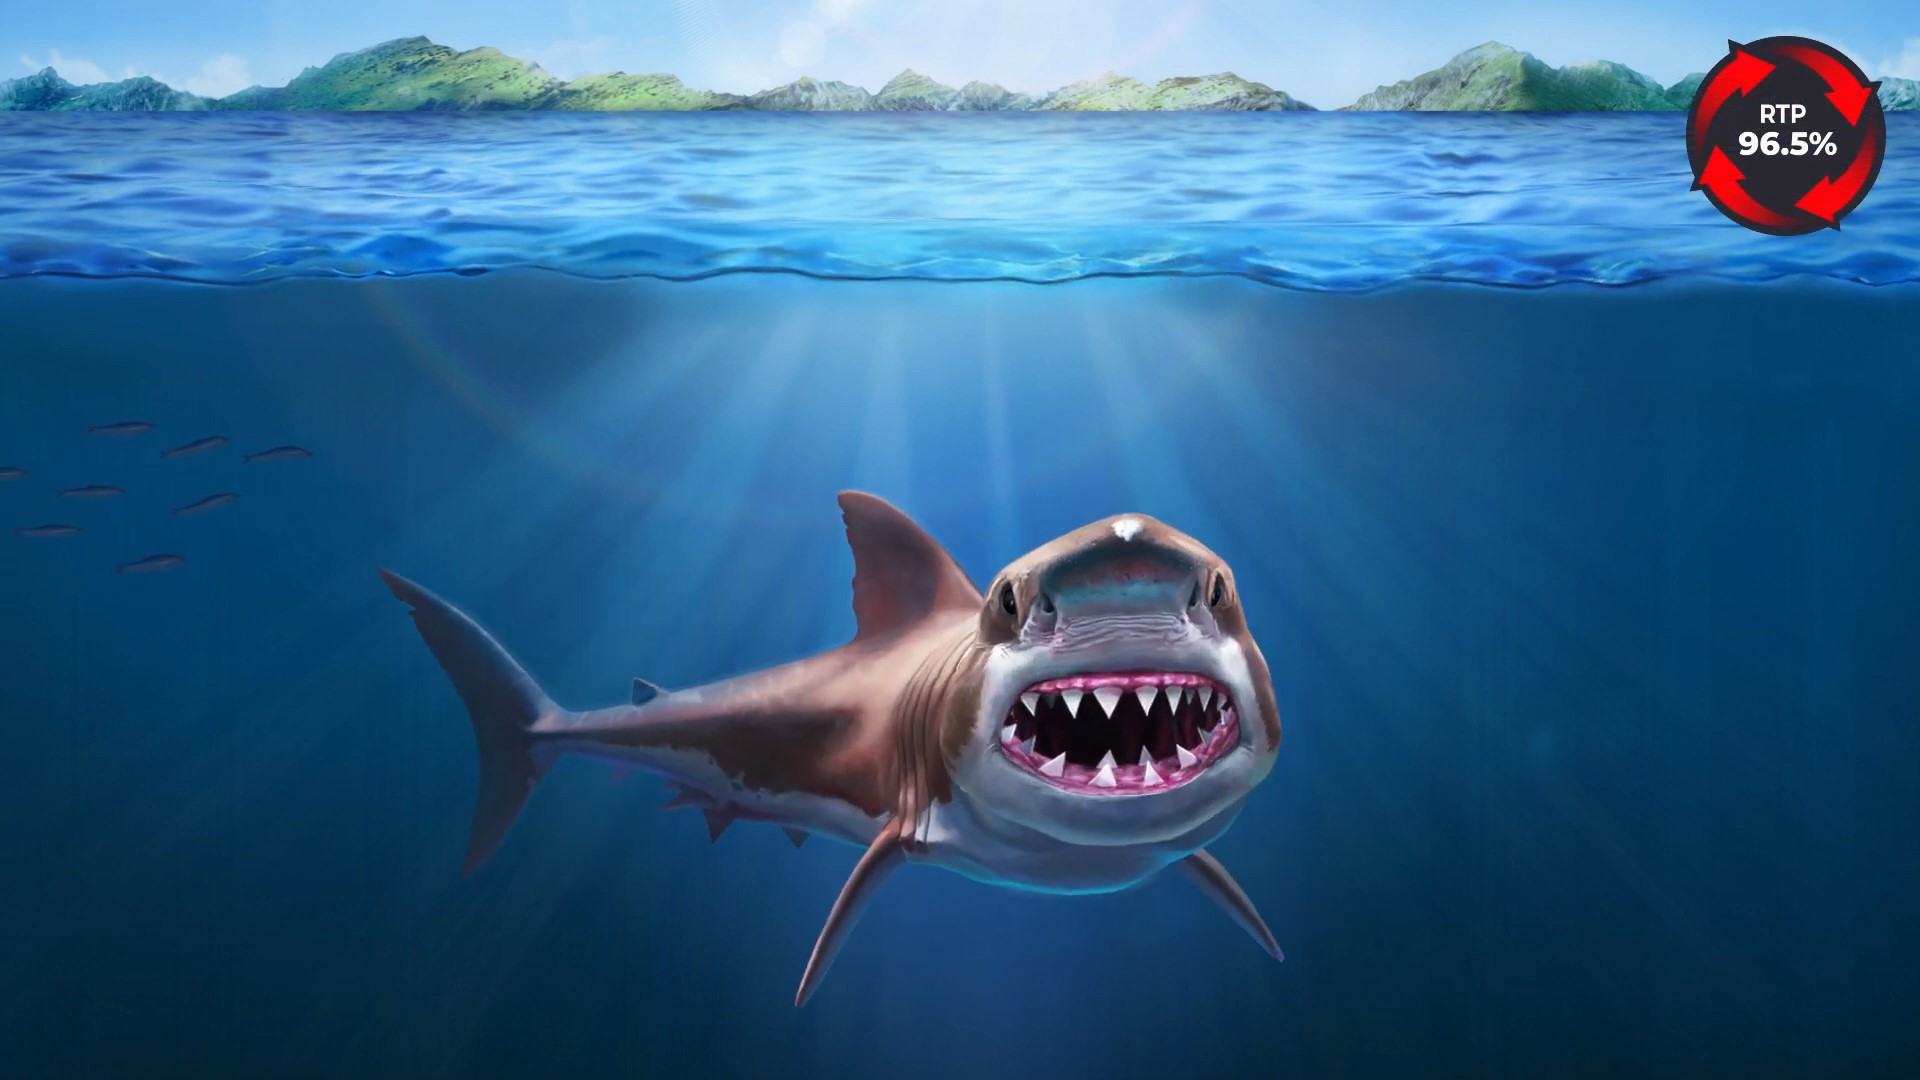 Hungry Shark - Wazdan